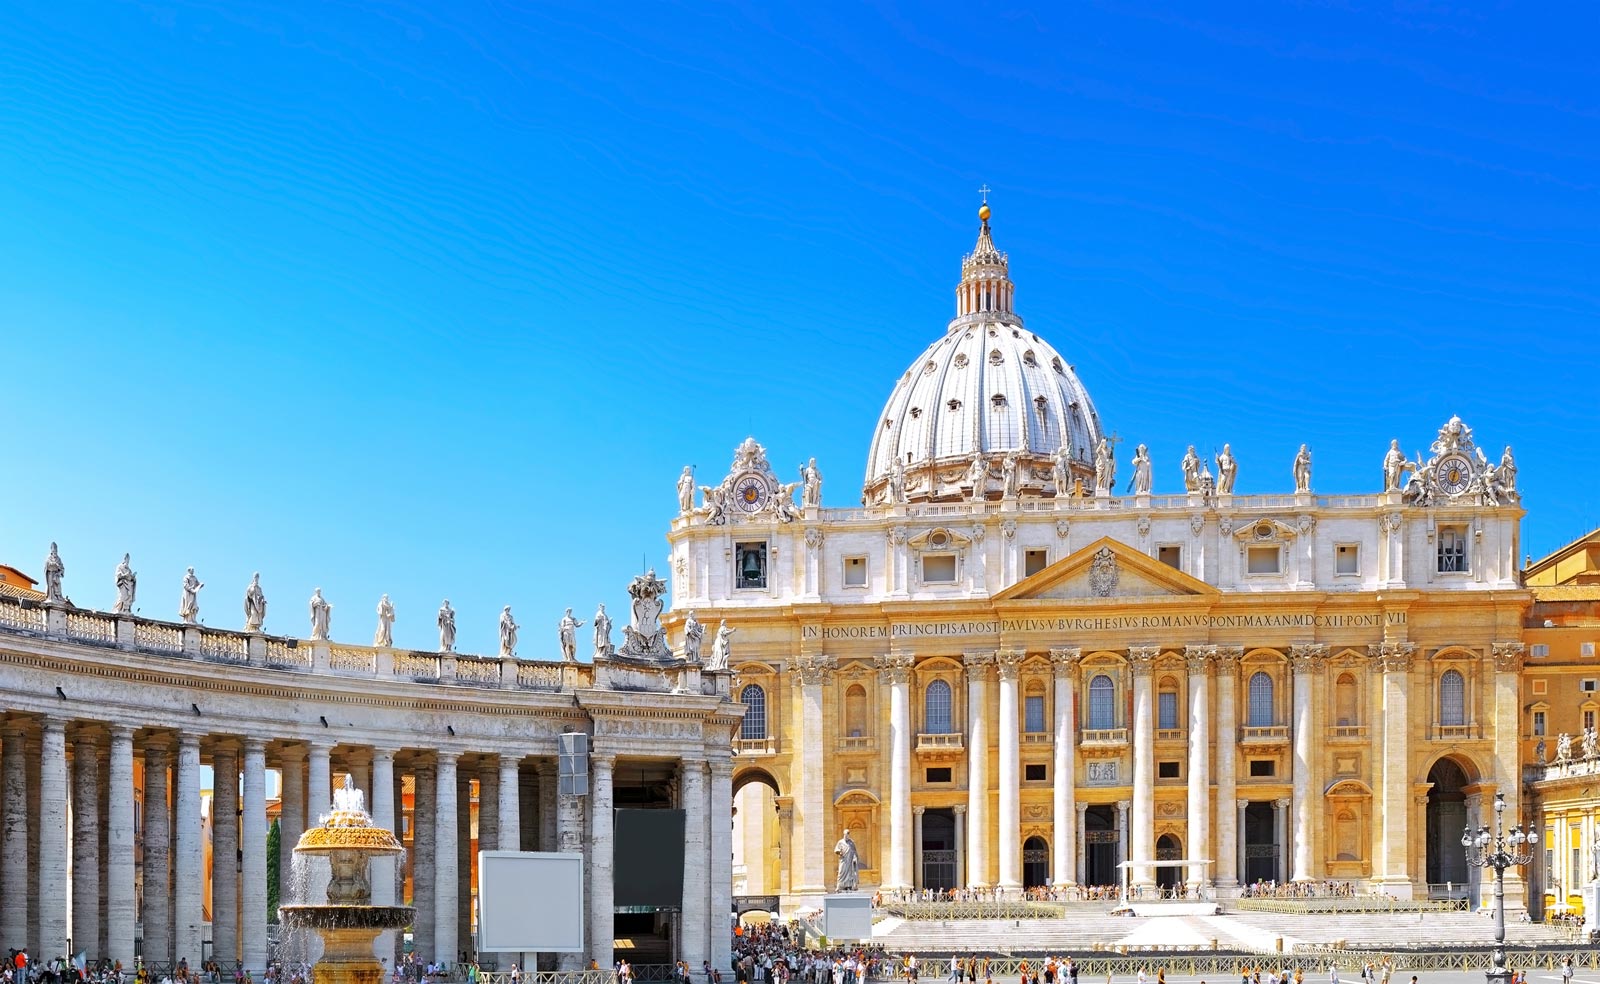 La Città del Vaticano è tra I più importanti luoghi religiosi e culturali al mondo e attrae, ogni giorno migliaia di visitatori. Senza dubbio è uno degli itinerari che non possono mancare in una visita alla città di Roma.